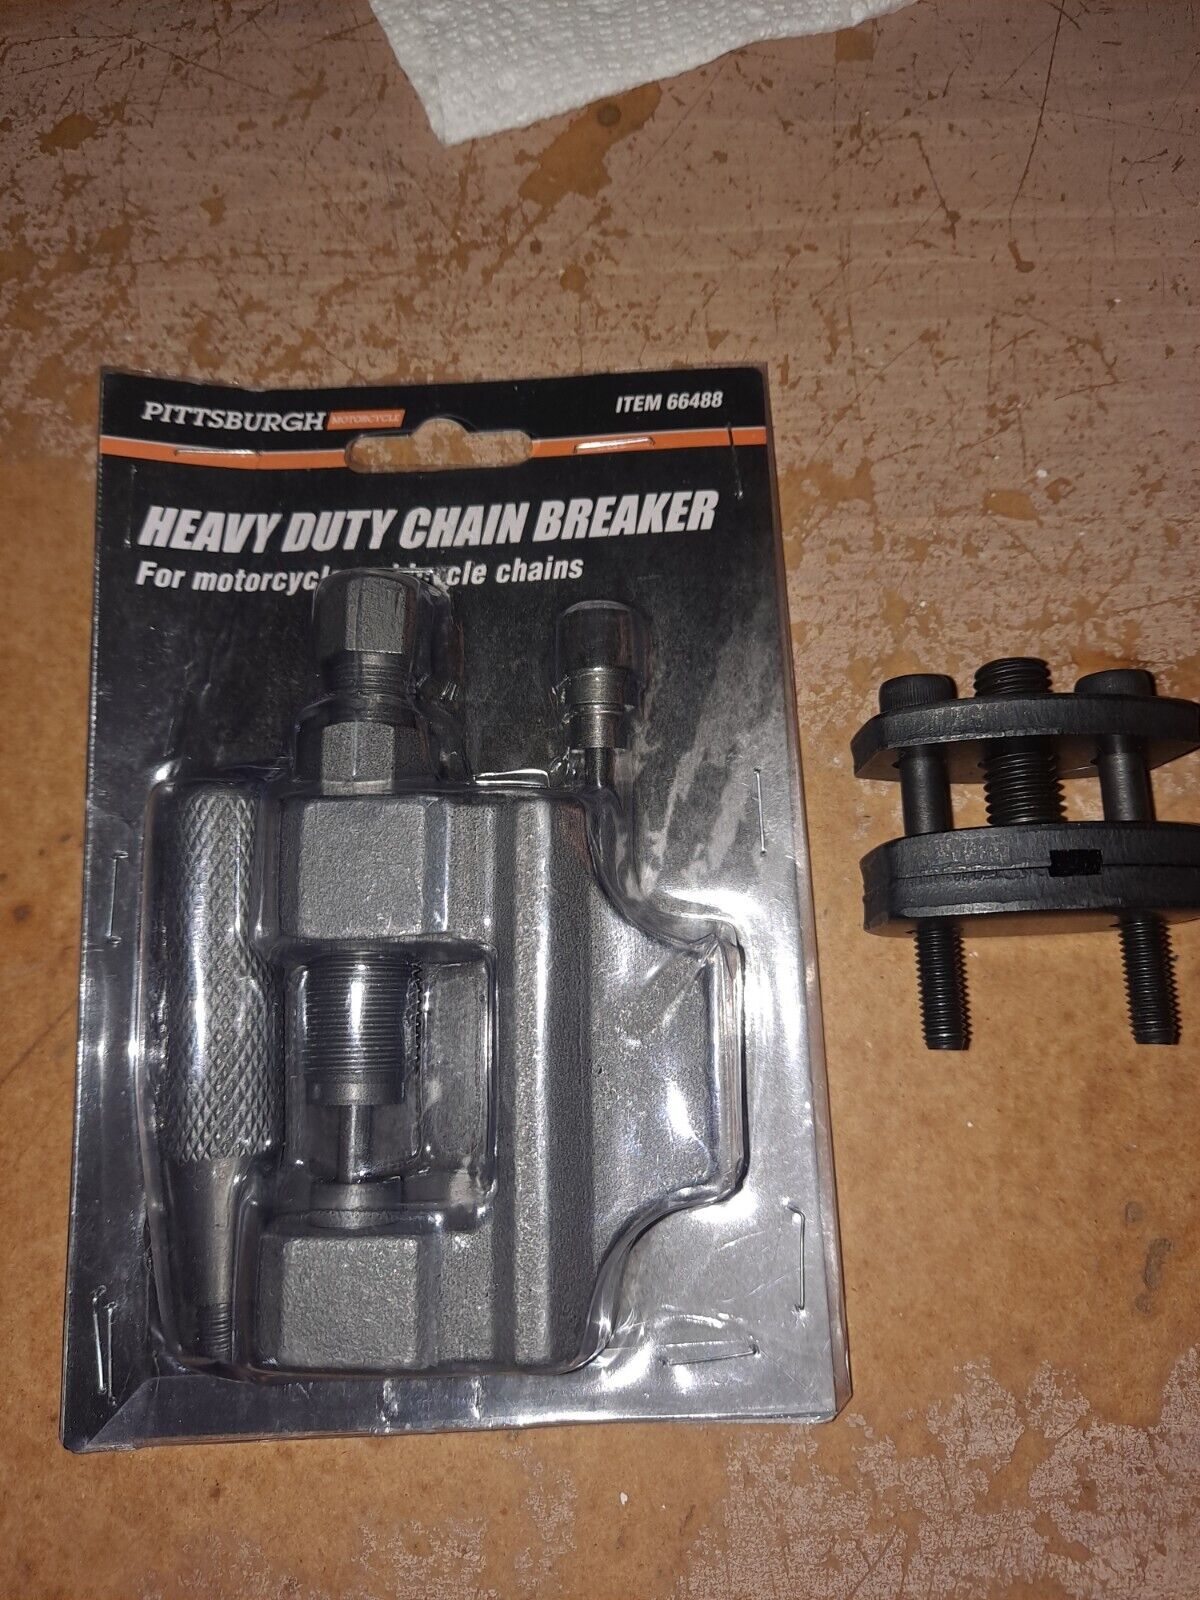 Pittsburgh Heavy Duty Chain Breaker & Splitter Tool